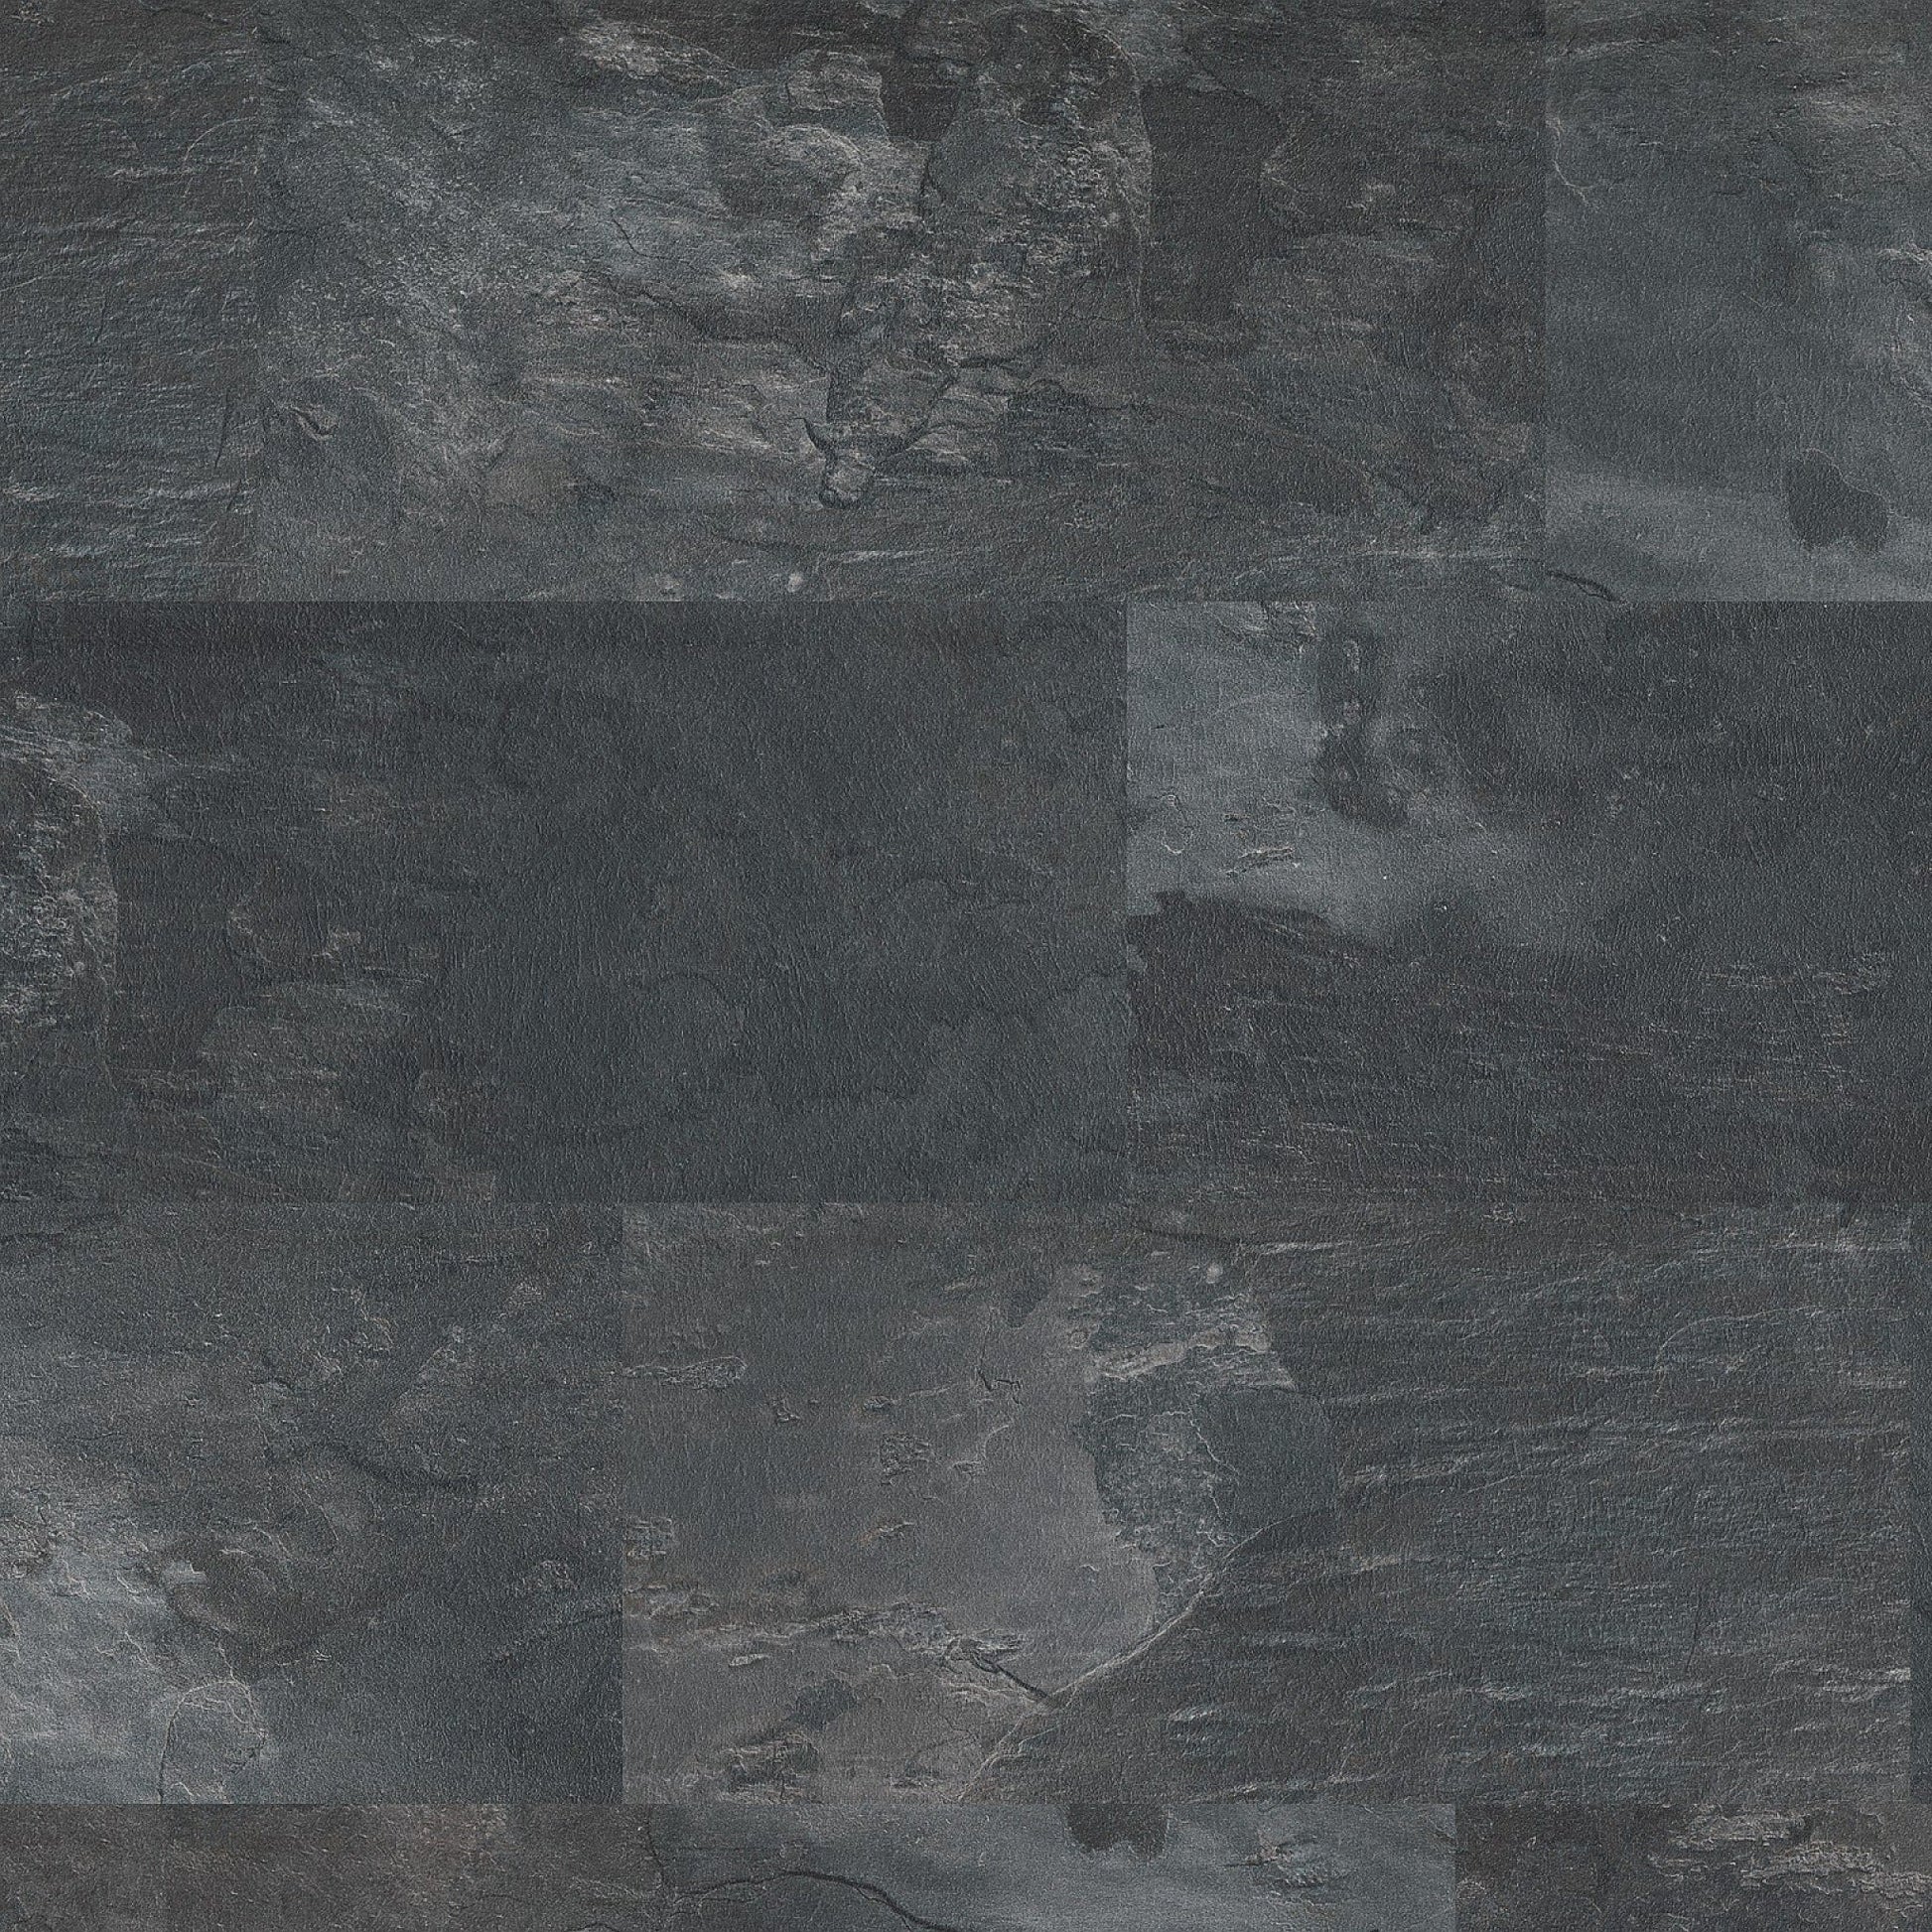 Floorlife Carrelage stratifié Madison Square Aqua Dark Grey 6394 - Aspect pierre naturelle 60.4 x 28 cm - Solza.fr